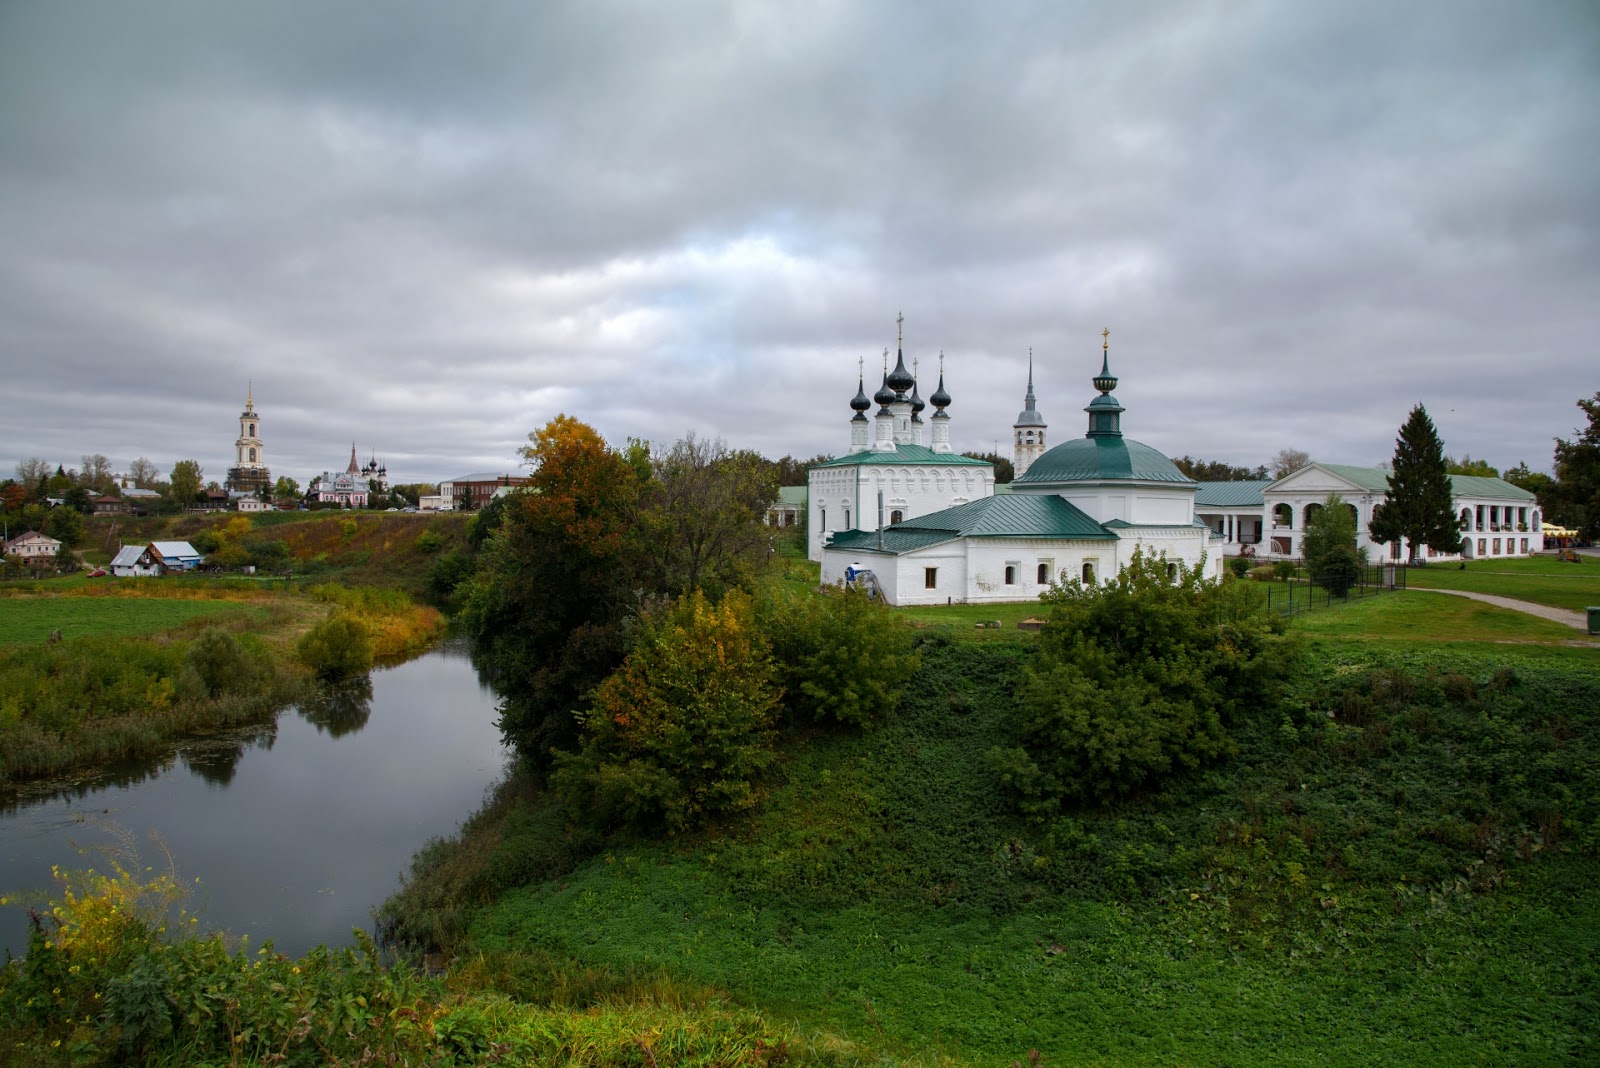 Фотографии Суздаля во Владимирской области. Осень